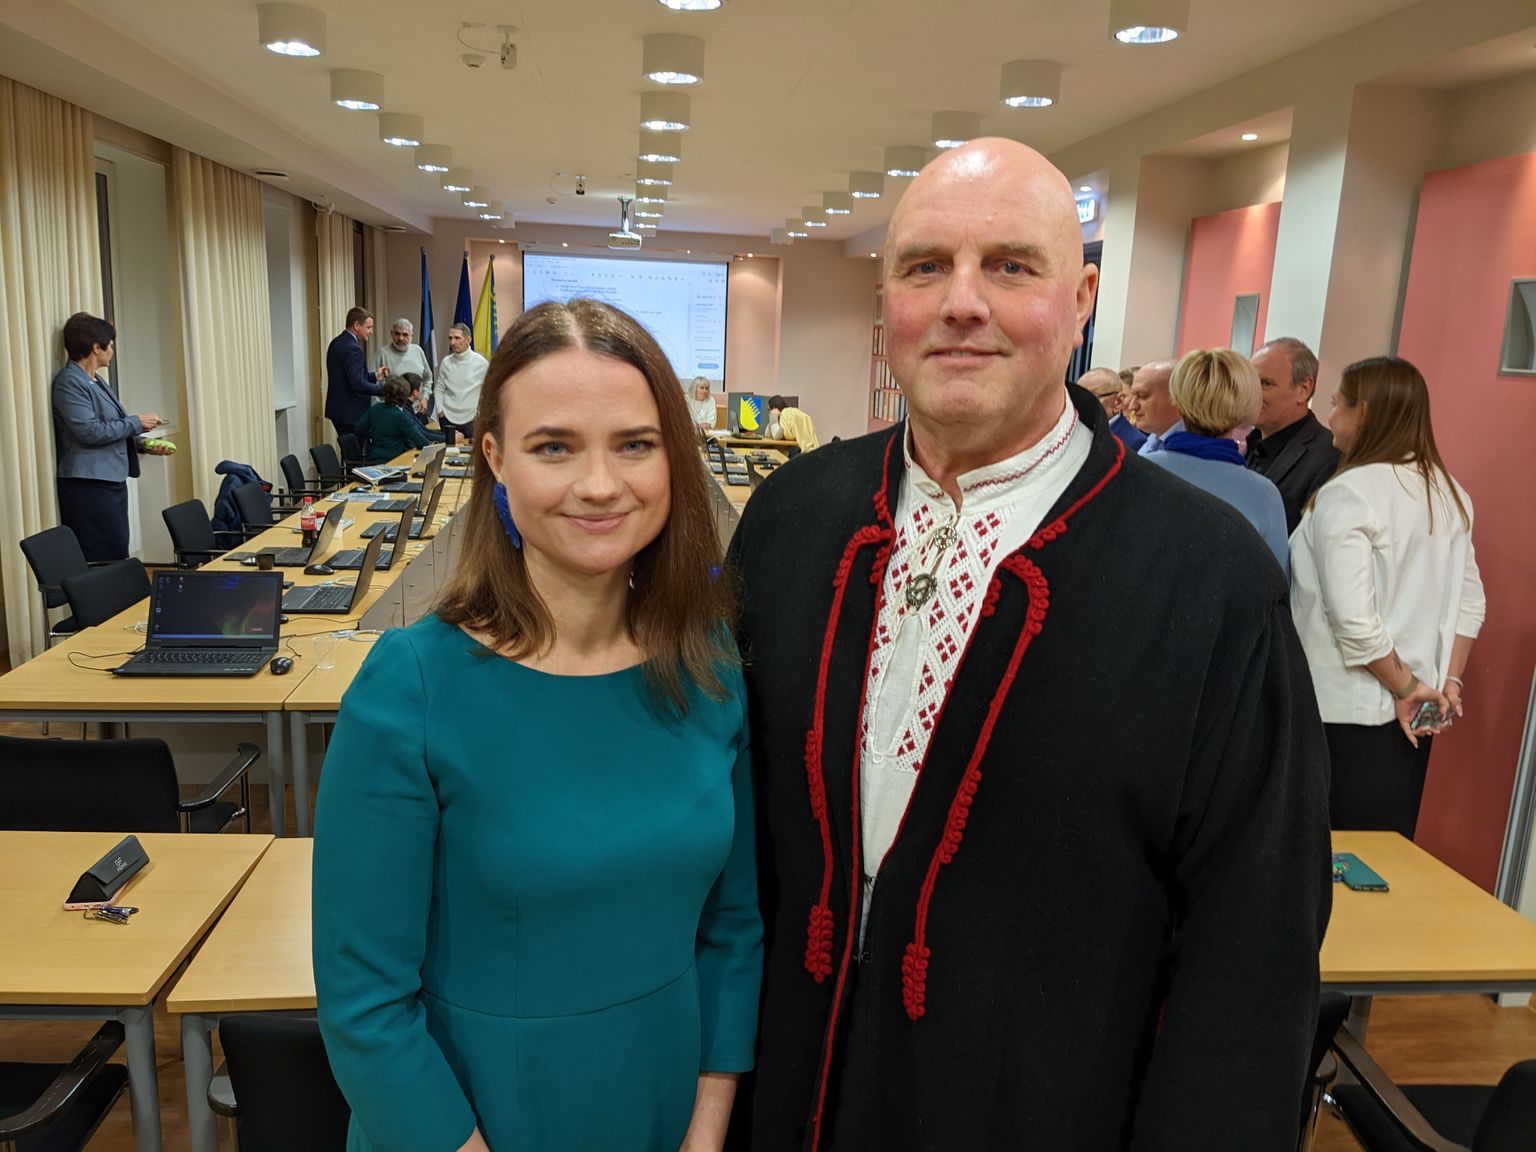 Вирве Линдер избрана мэром, а Хендрик Агур - председателем горсобрания в конце ноября.